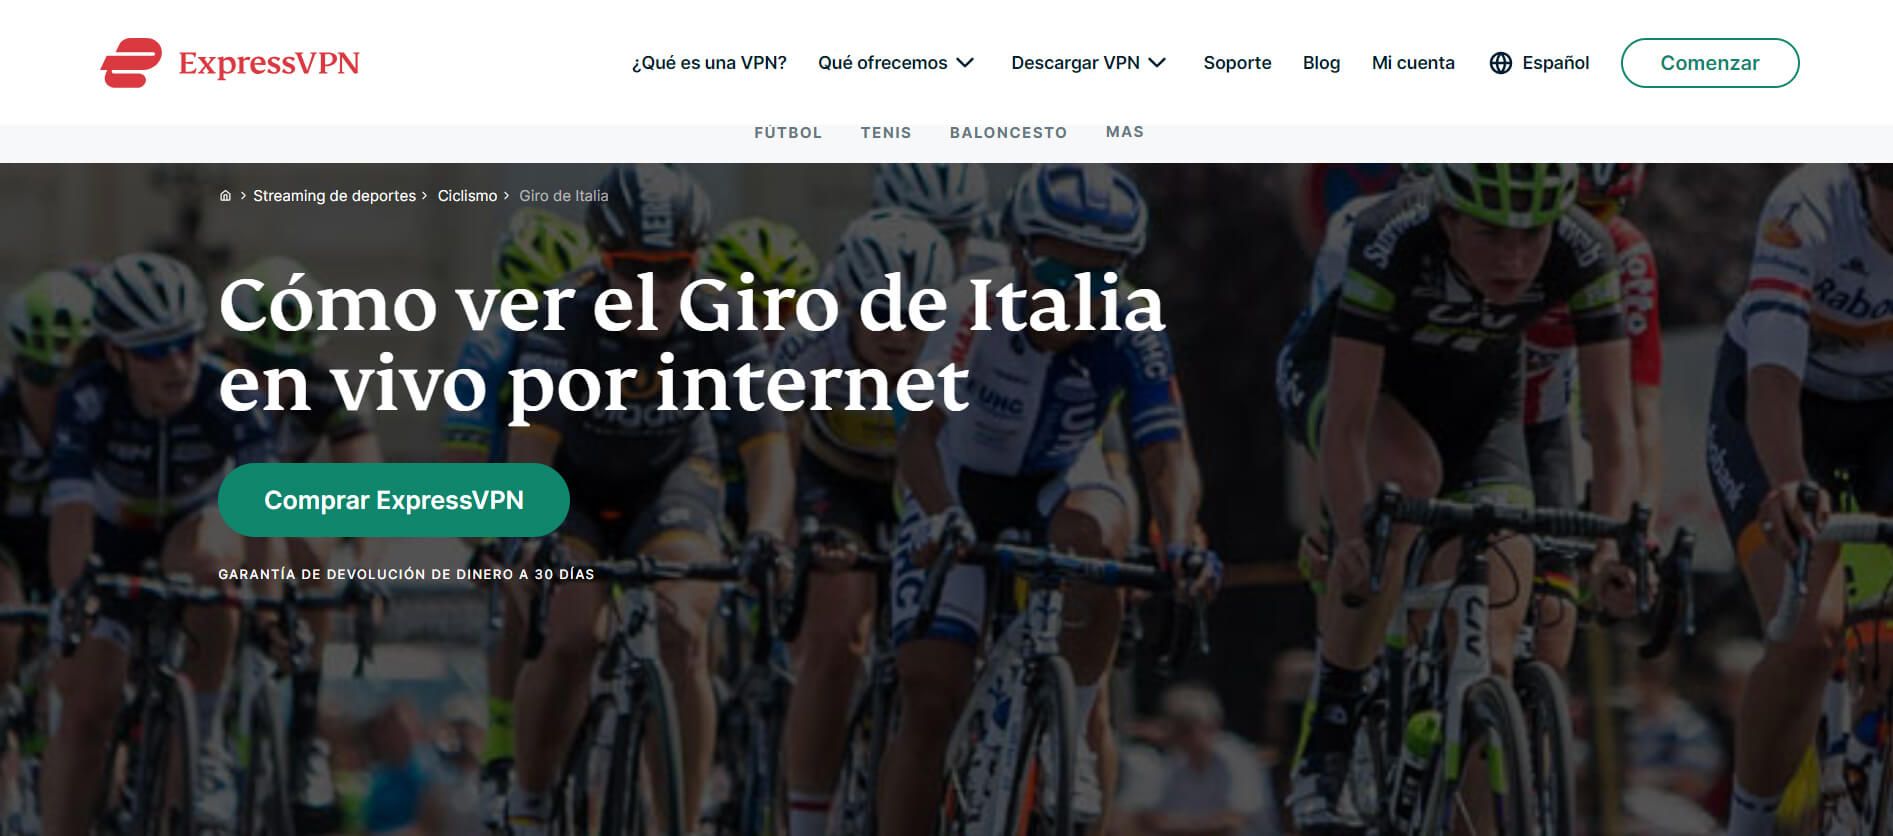 Giro De Italia Expressvpn